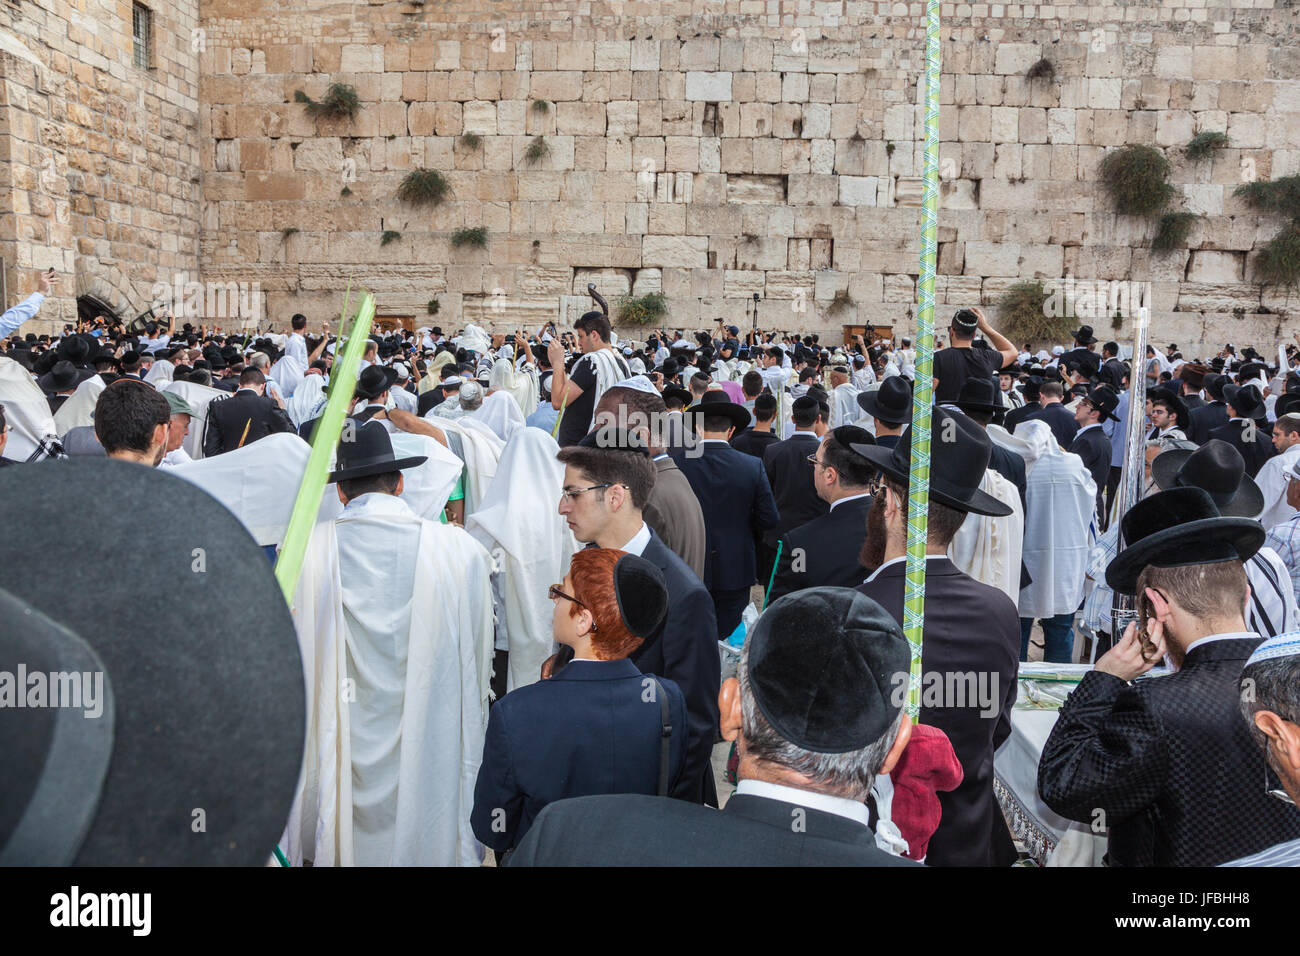 Jewish worshipers in white shawls Stock Photo